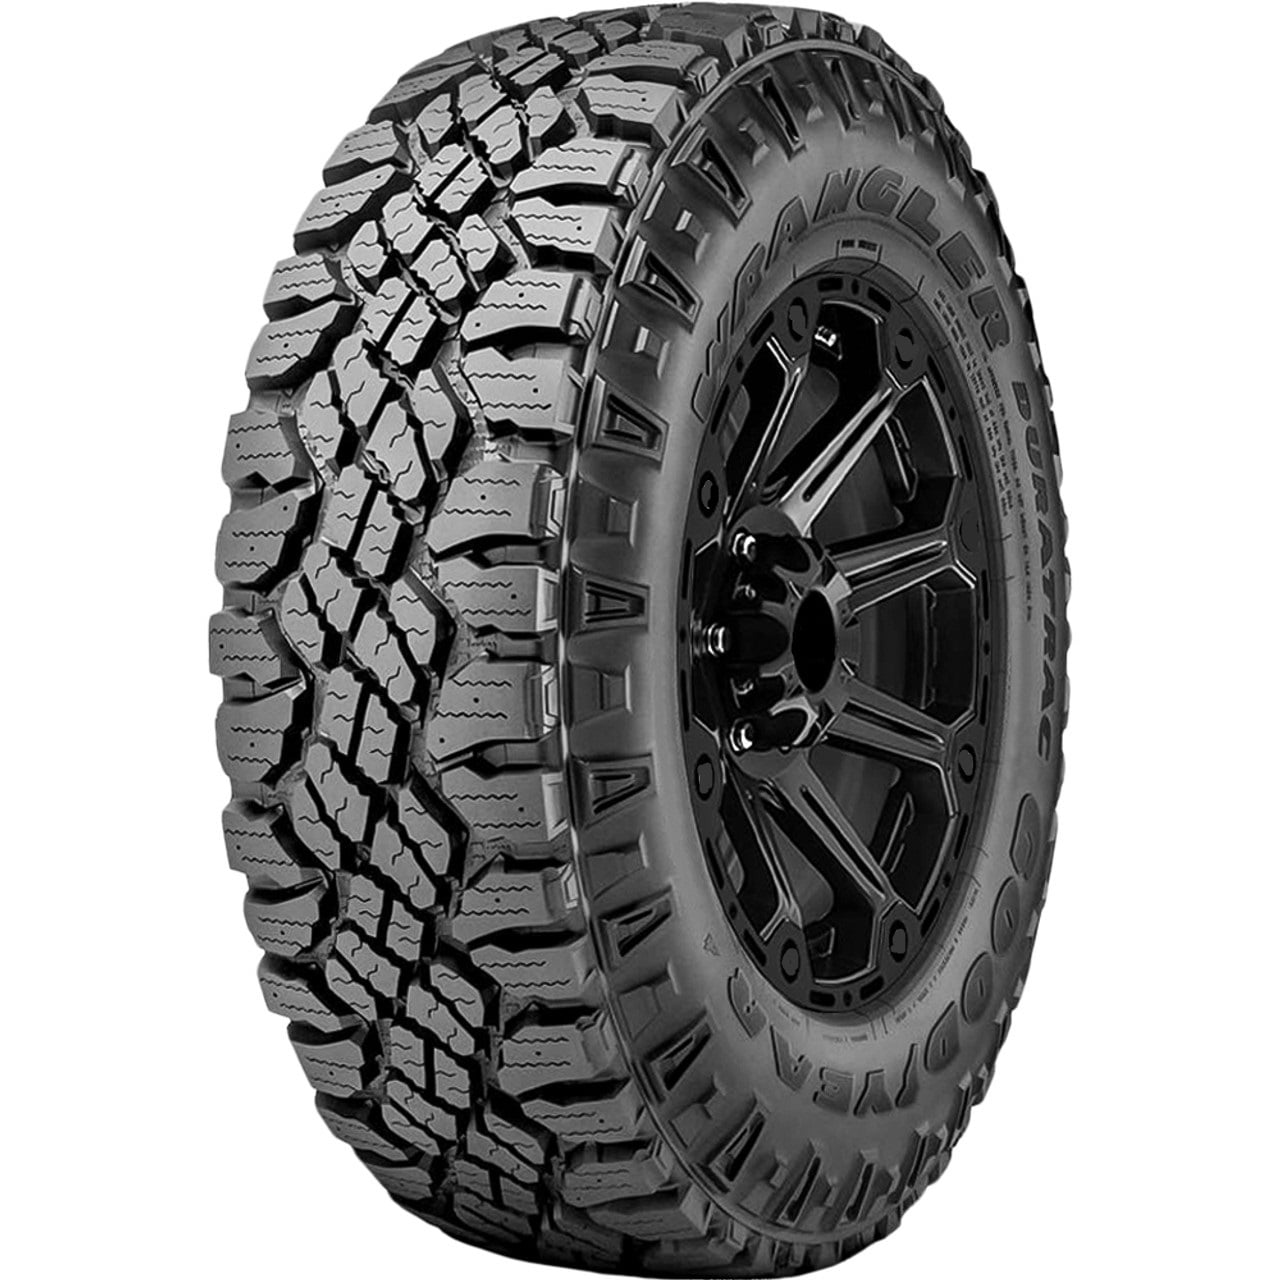 2 New Goodyear Wrangler DuraTrac All-Terrain Tires - LT275/70R18 10PLY -  